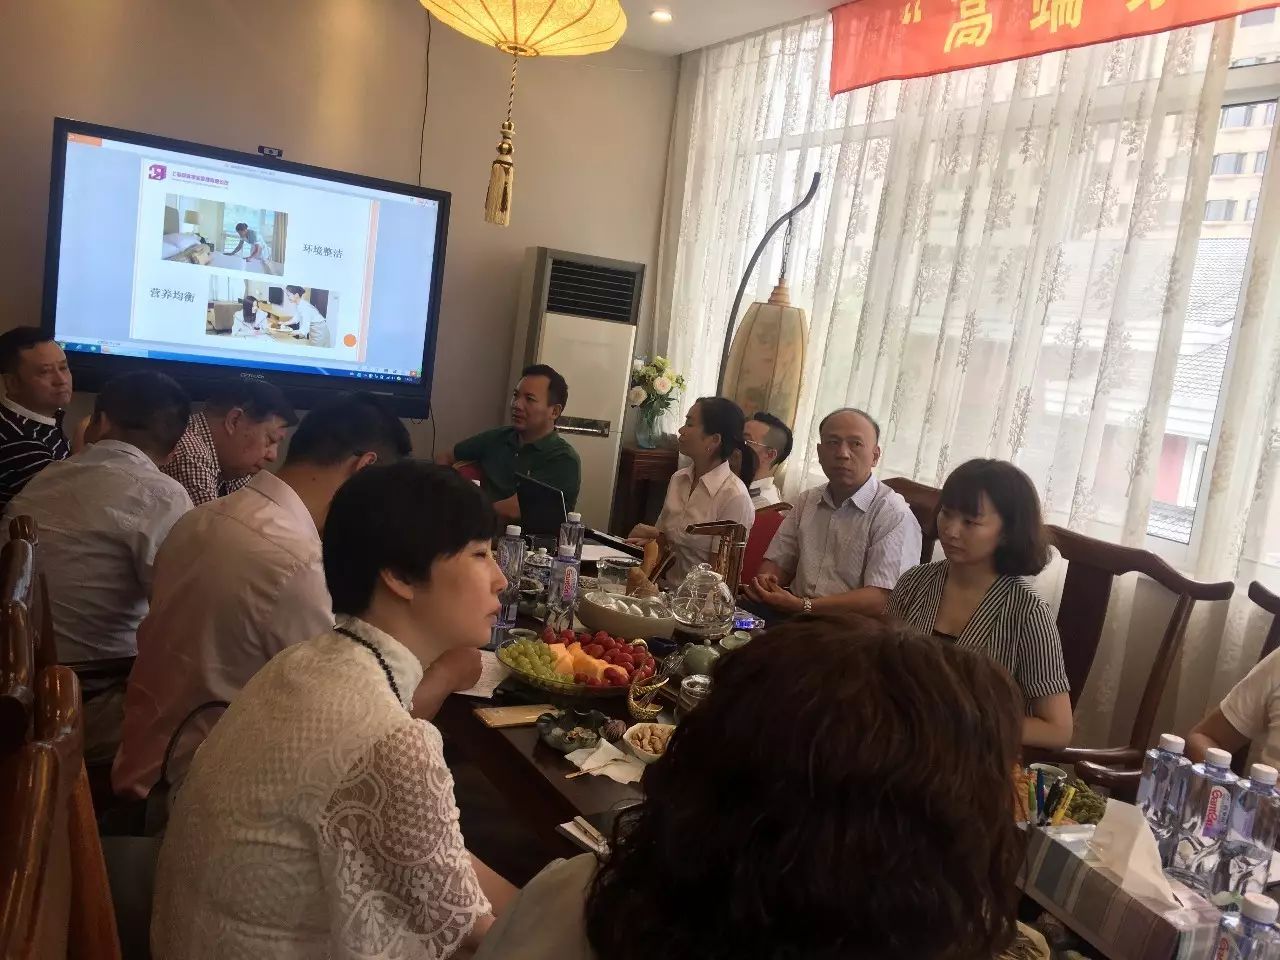 上海高端家政服务市场发展趋势和行业规范化建设研讨会